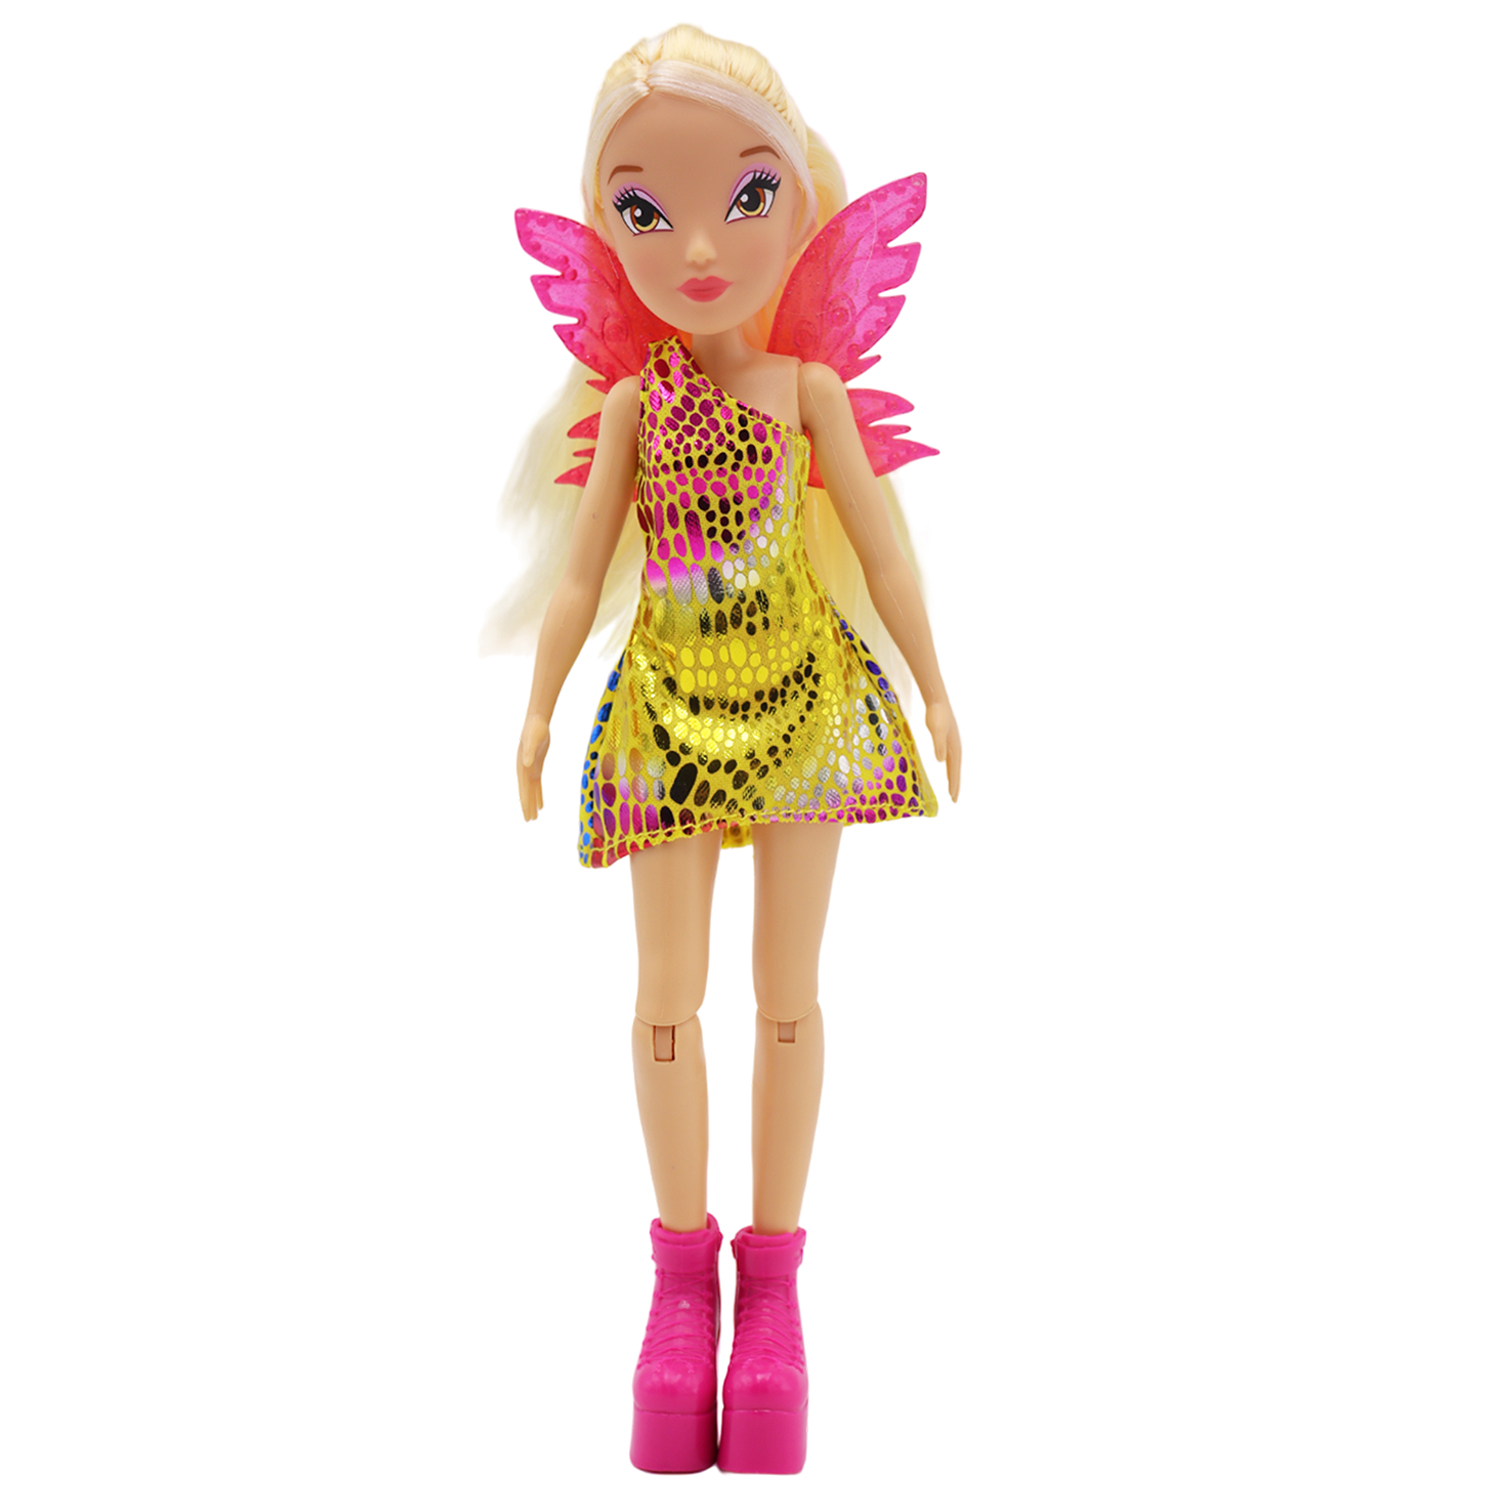 Кукла шарнирная Winx Club Стелла с крыльями, 24 см, IW01552303 кукла winx club лофт стелла